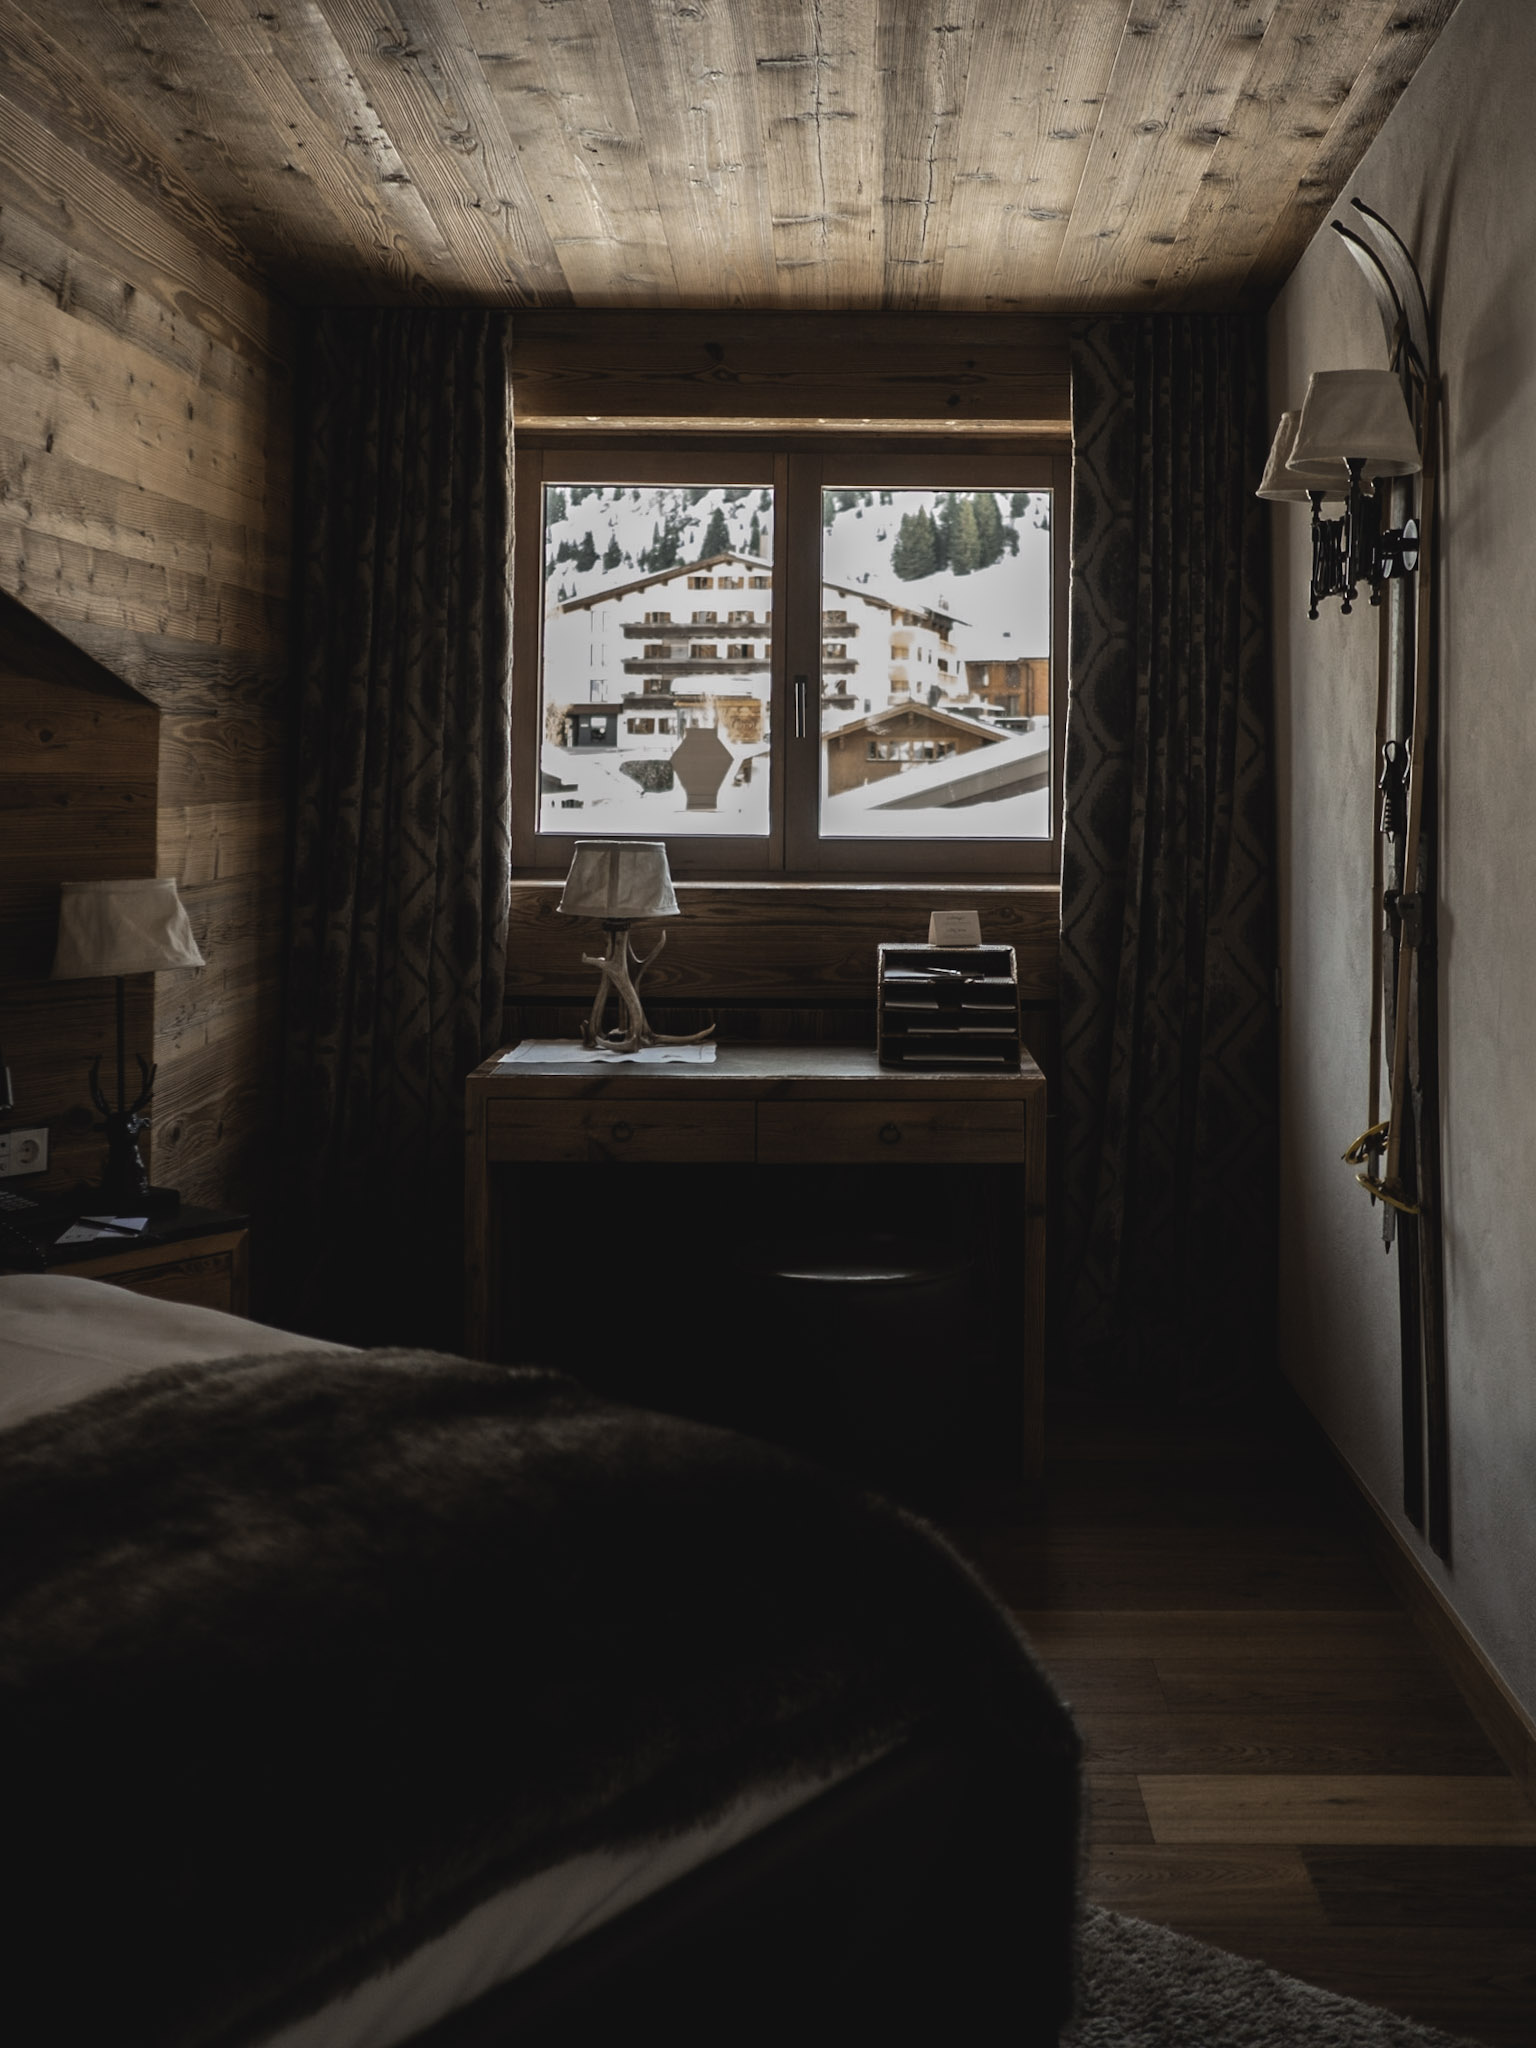 44-the-lins-blog-travel-hotel-arlberg-lech-zimmer-jagdhof